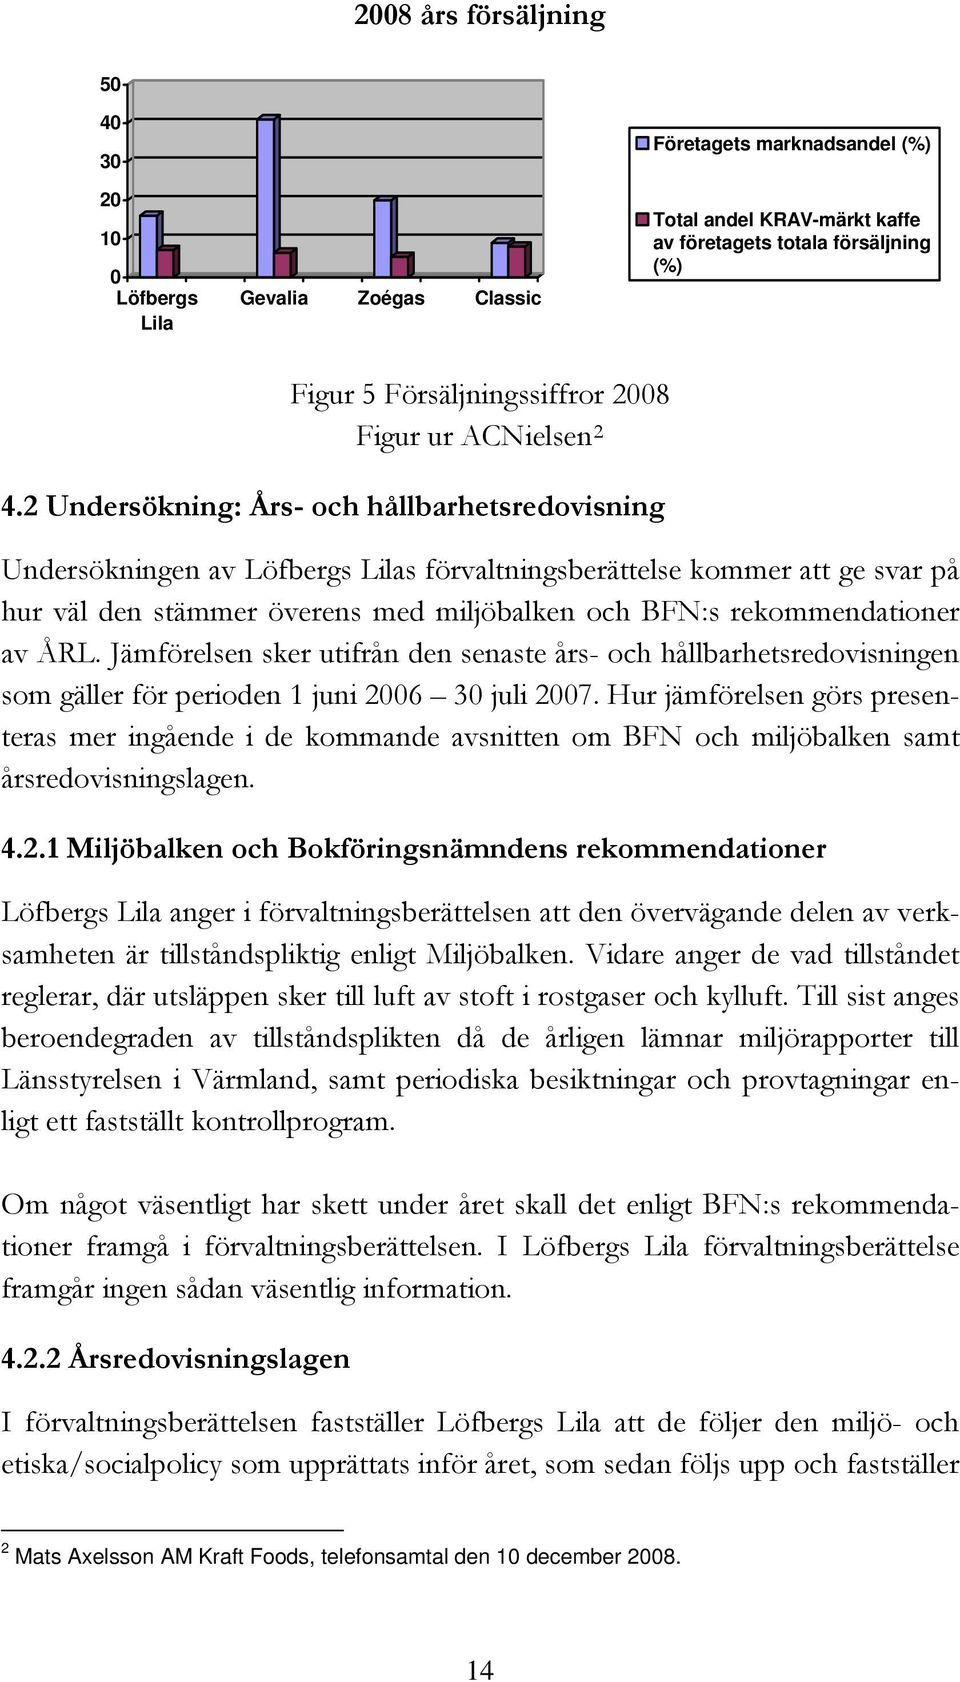 2 Undersökning: Års- och hållbarhetsredovisning Undersökningen av Löfbergs Lilas förvaltningsberättelse kommer att ge svar på hur väl den stämmer överens med miljöbalken och BFN:s rekommendationer av